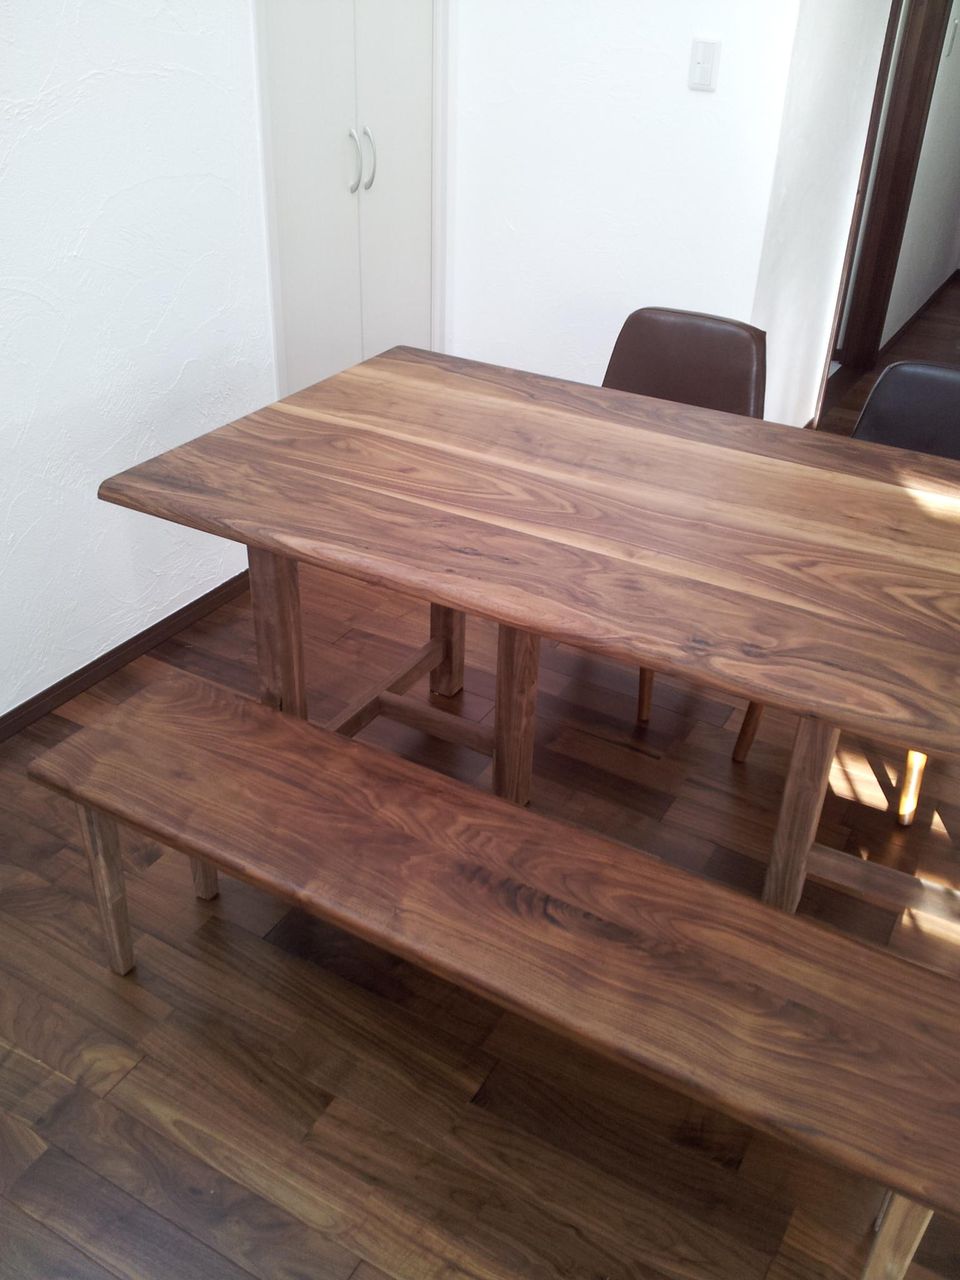 ｳｫﾙﾅｯﾄﾀﾞｲﾆﾝｸﾞﾃｰﾌﾞﾙ/座卓兼用ﾀｲﾌﾟ : 天然ムク家具とナチュラル空間のレンタルスペース すっぴん家具 マルタ